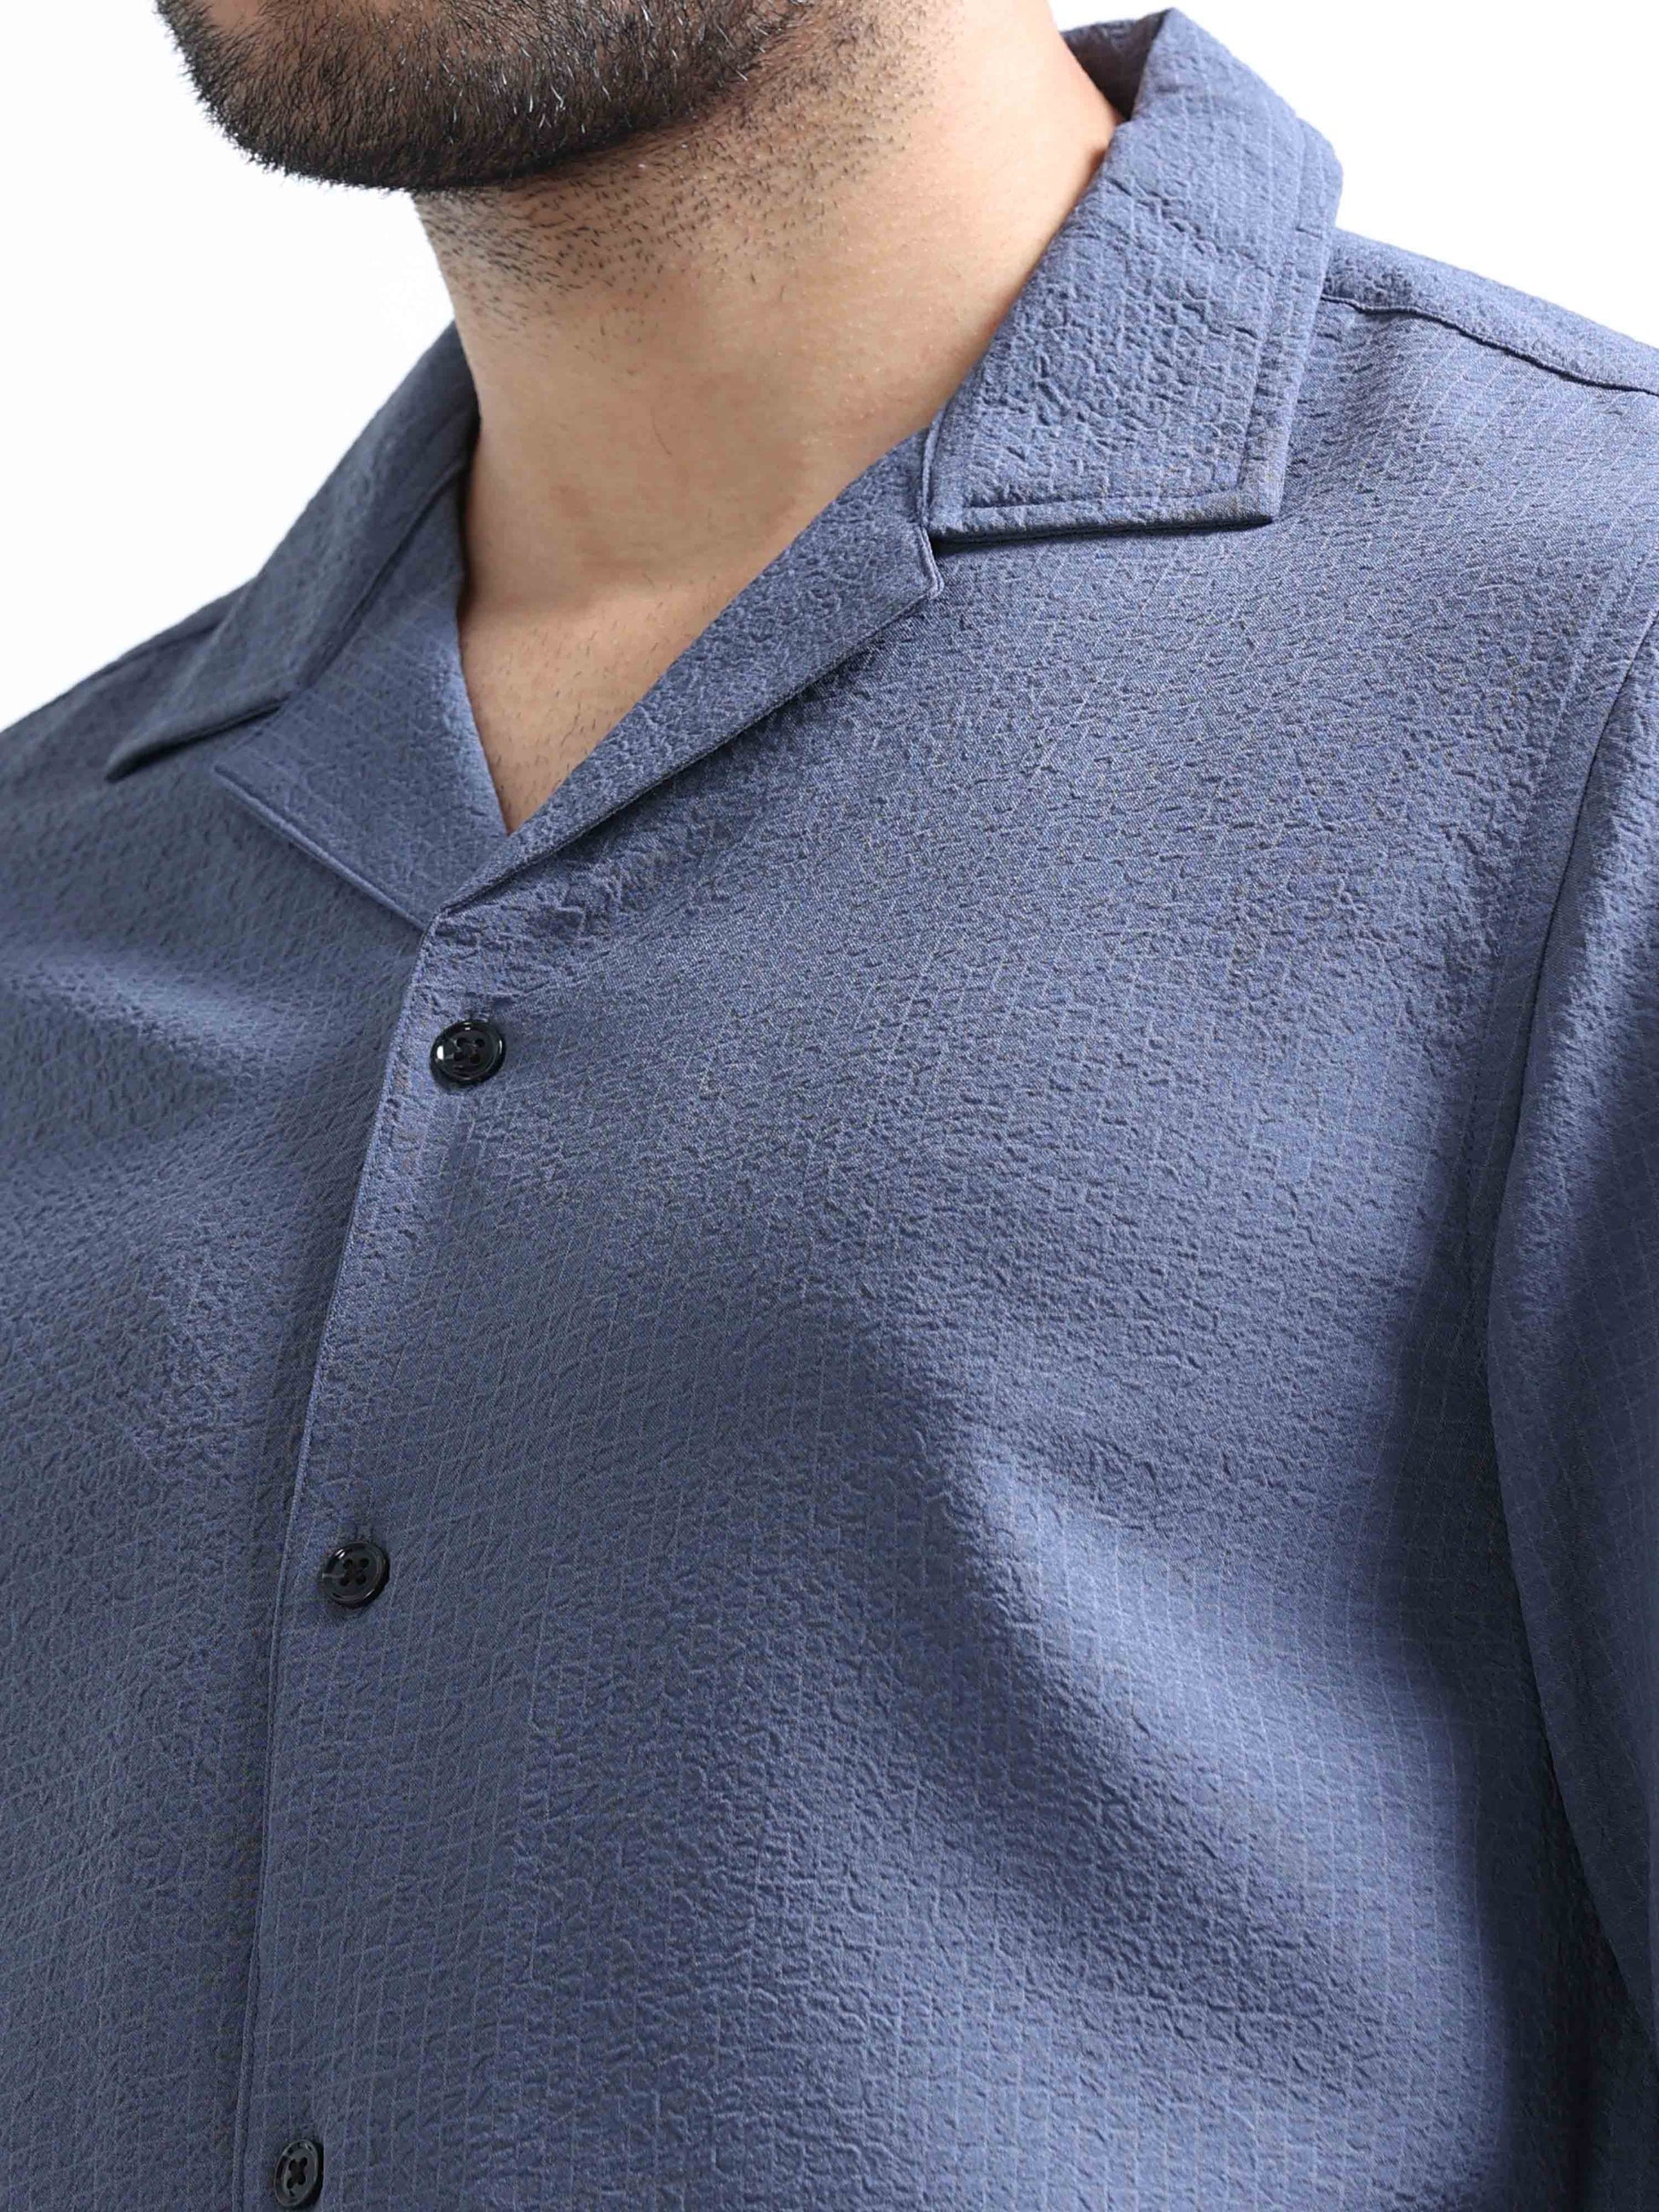 Blue Crushed Full Sleeve Shirt for Men